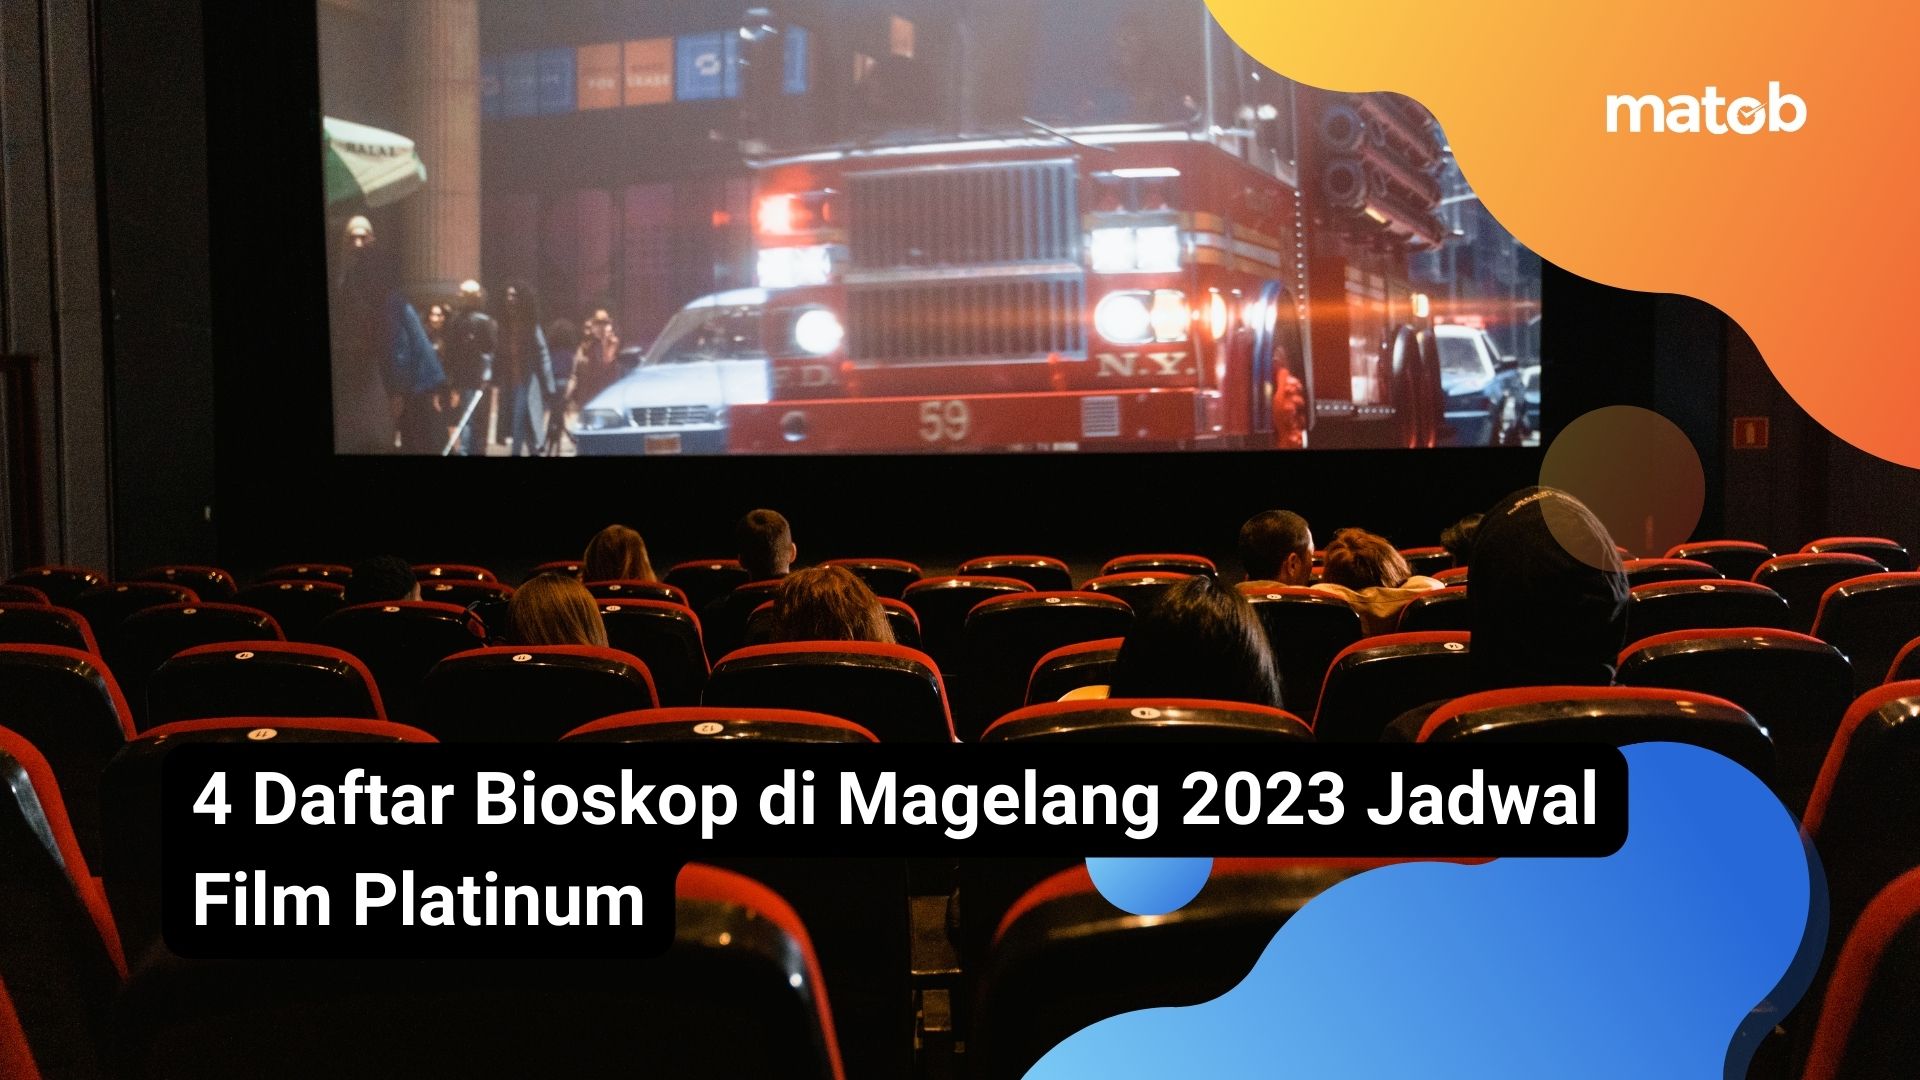 4 Daftar Bioskop di Magelang 2023 Jadwal Film Platinum